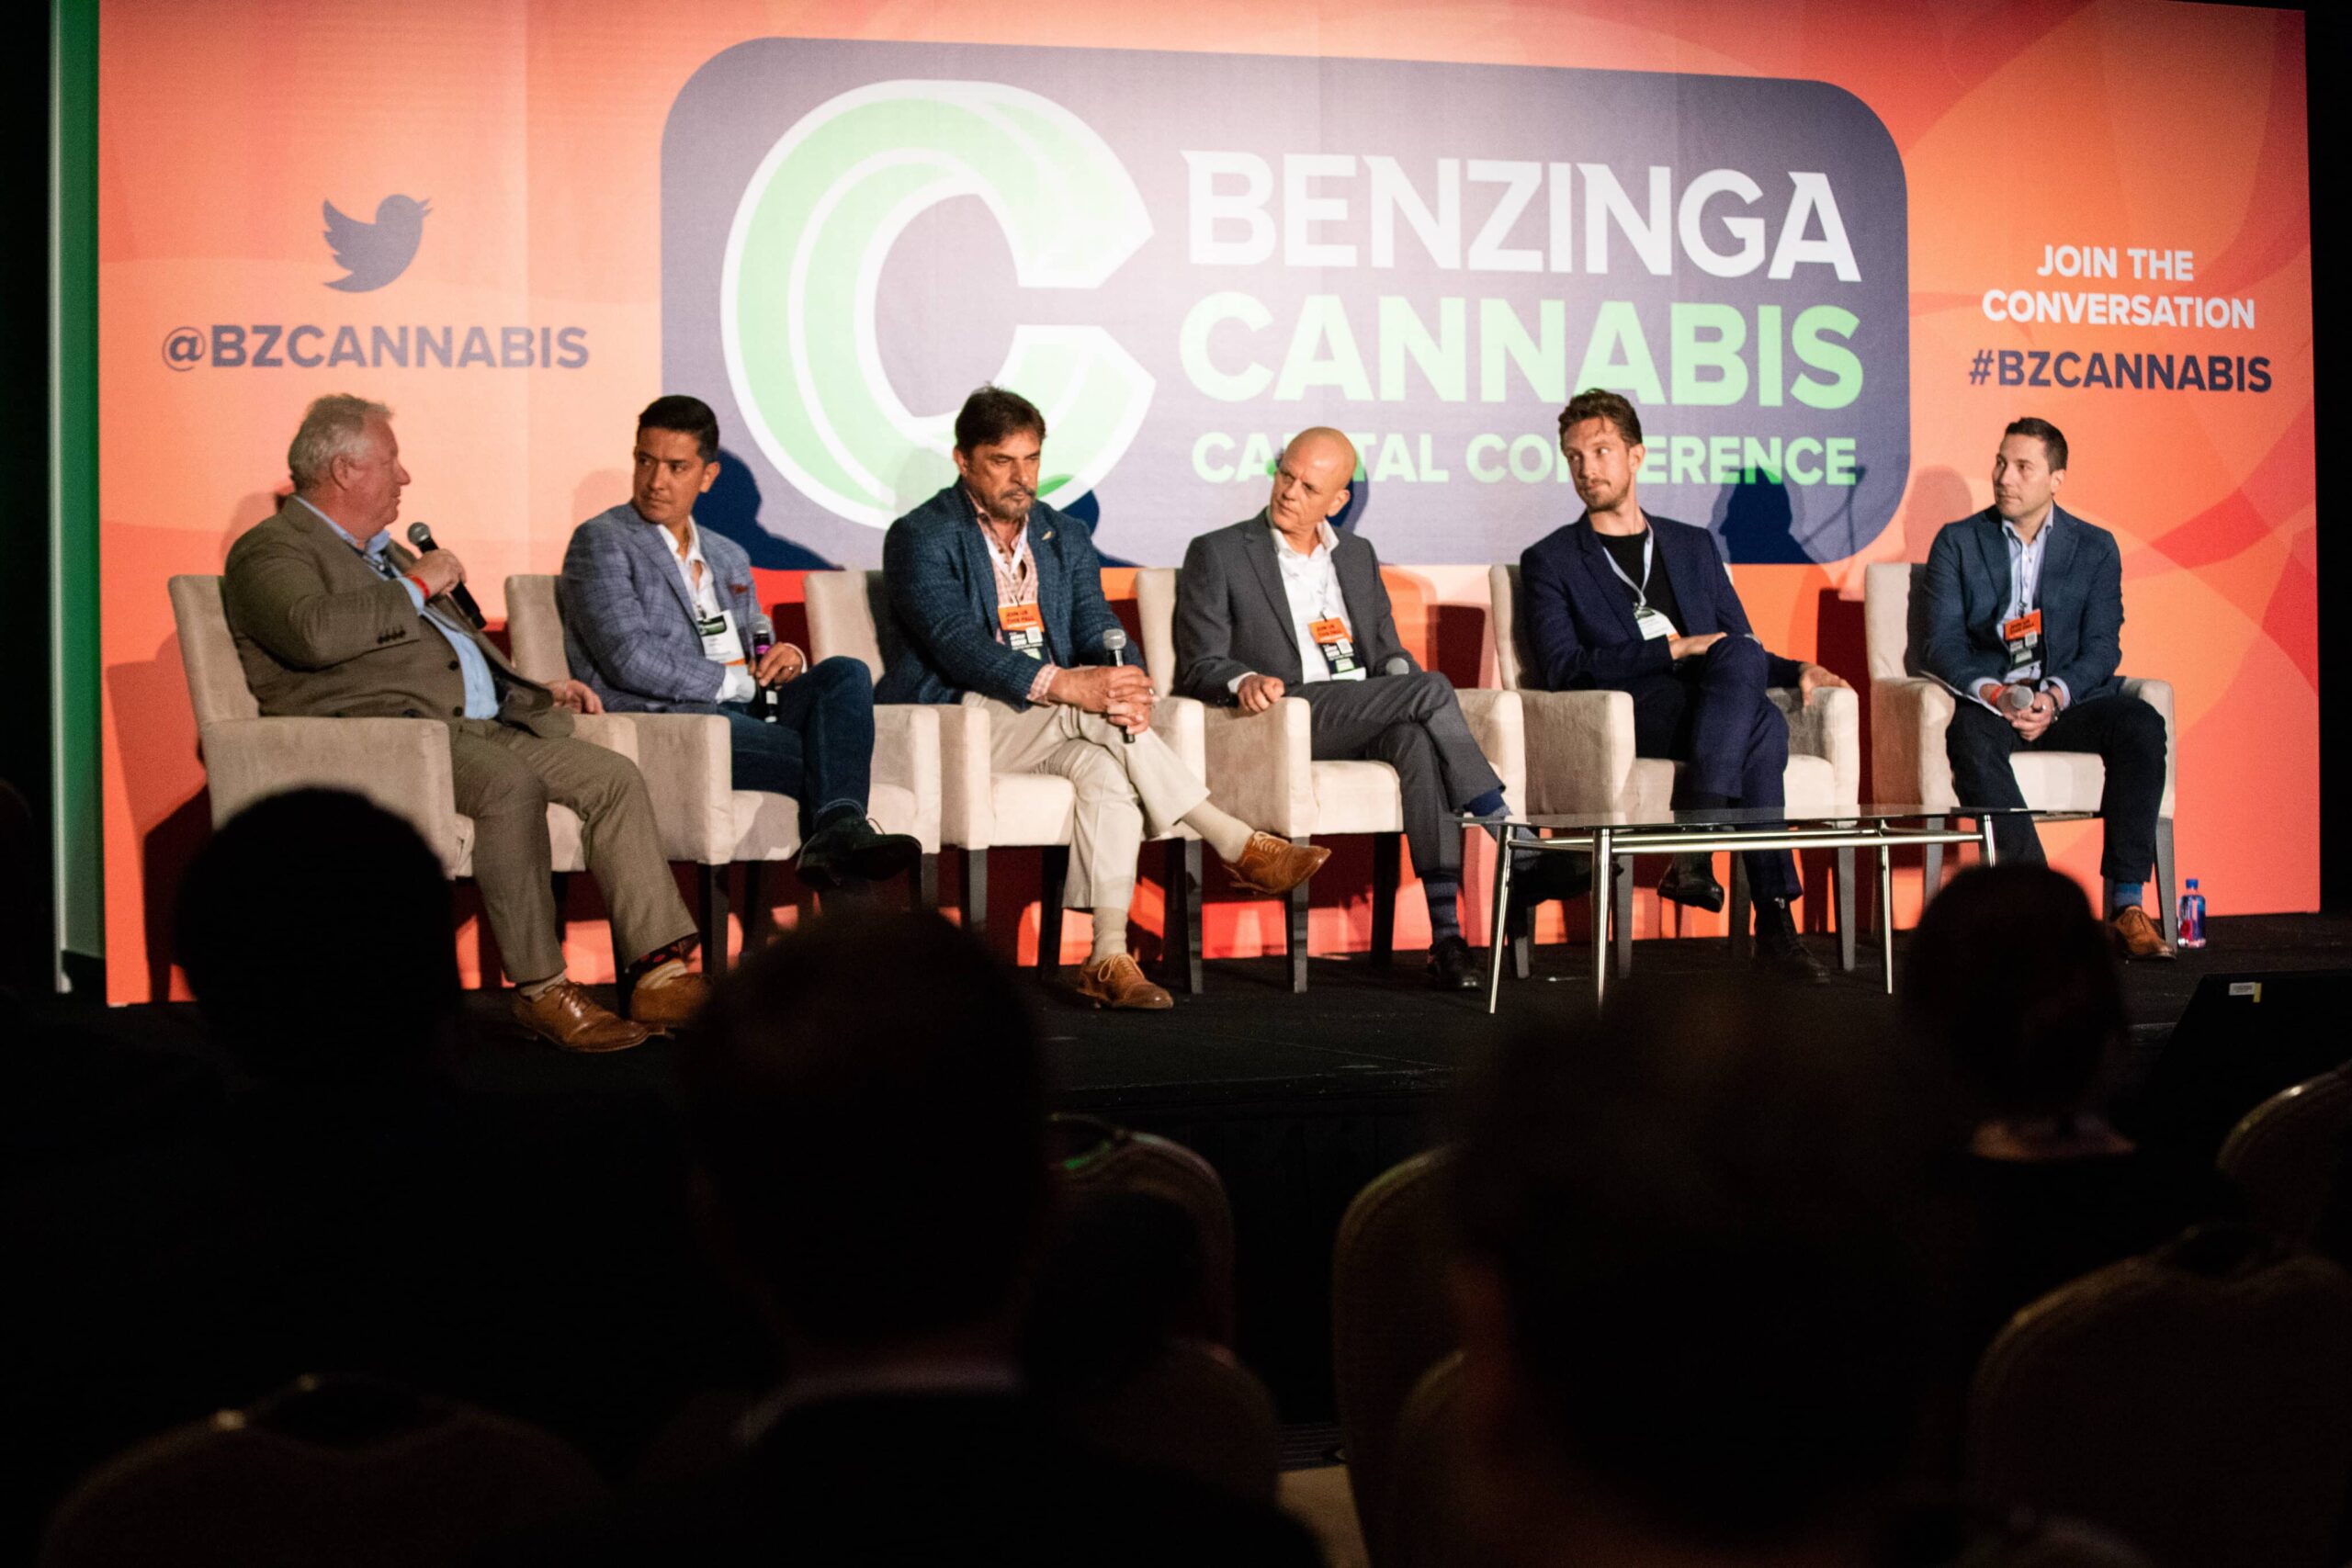 Alianzas poderosas: Twitter, Uber, políticos, inversionistas y compañías de cannabis convergen en la Conferencia Capital del Cannabis de Benzinga en Miami, el 11 y 12 de abril